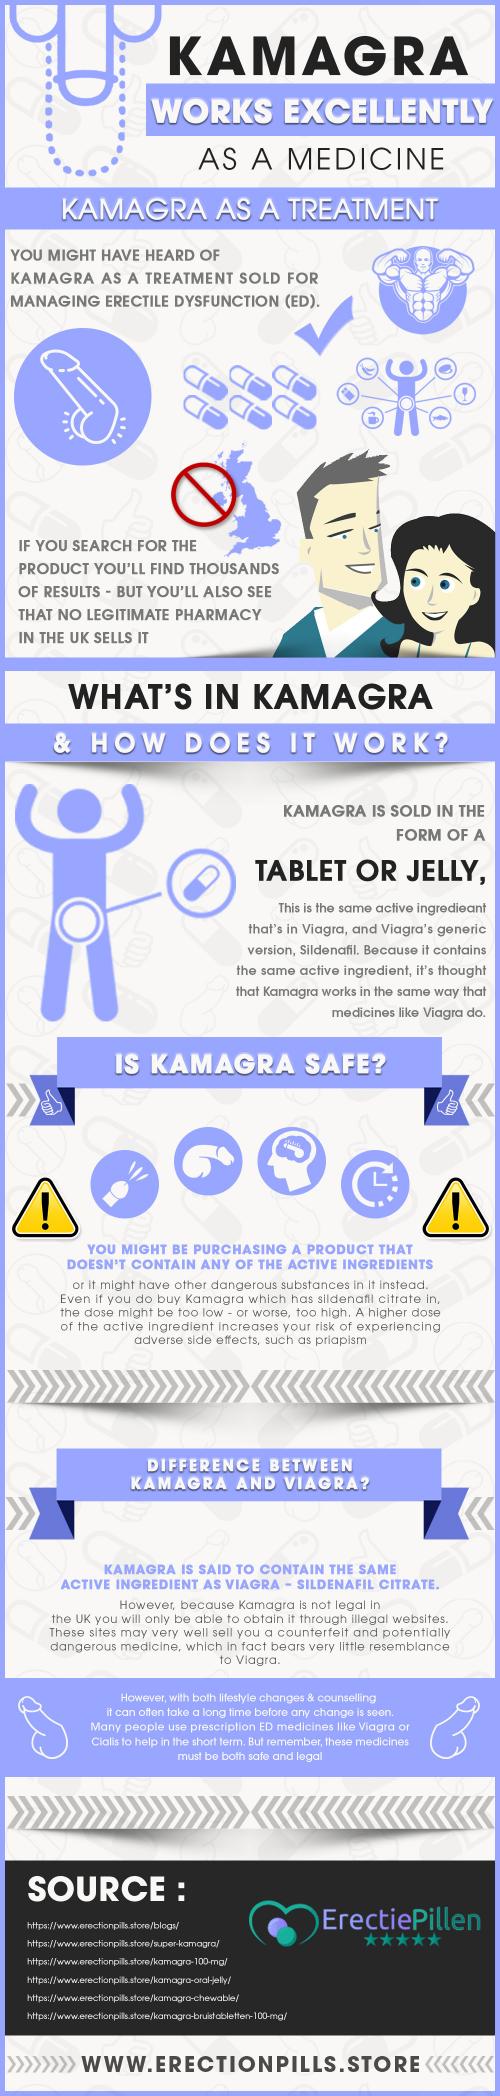 Kamagra Infographic